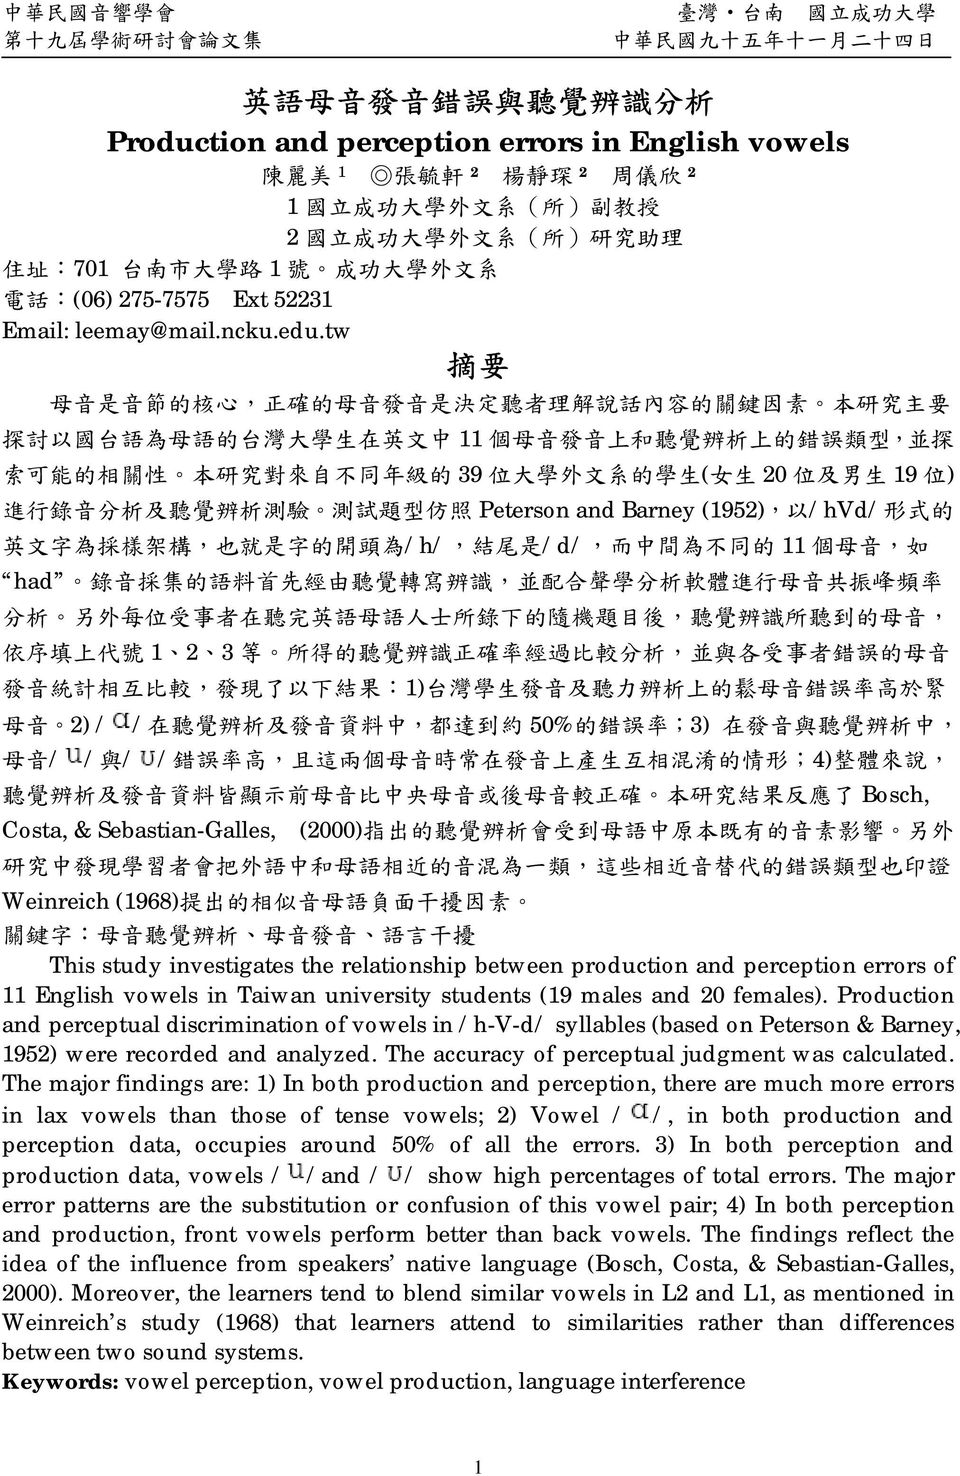 (2000) 類 類 Weinreich (1968) This study investigates the relationship between production and perception errors of 11 English vowels in Taiwan university students (19 males and 20 females).